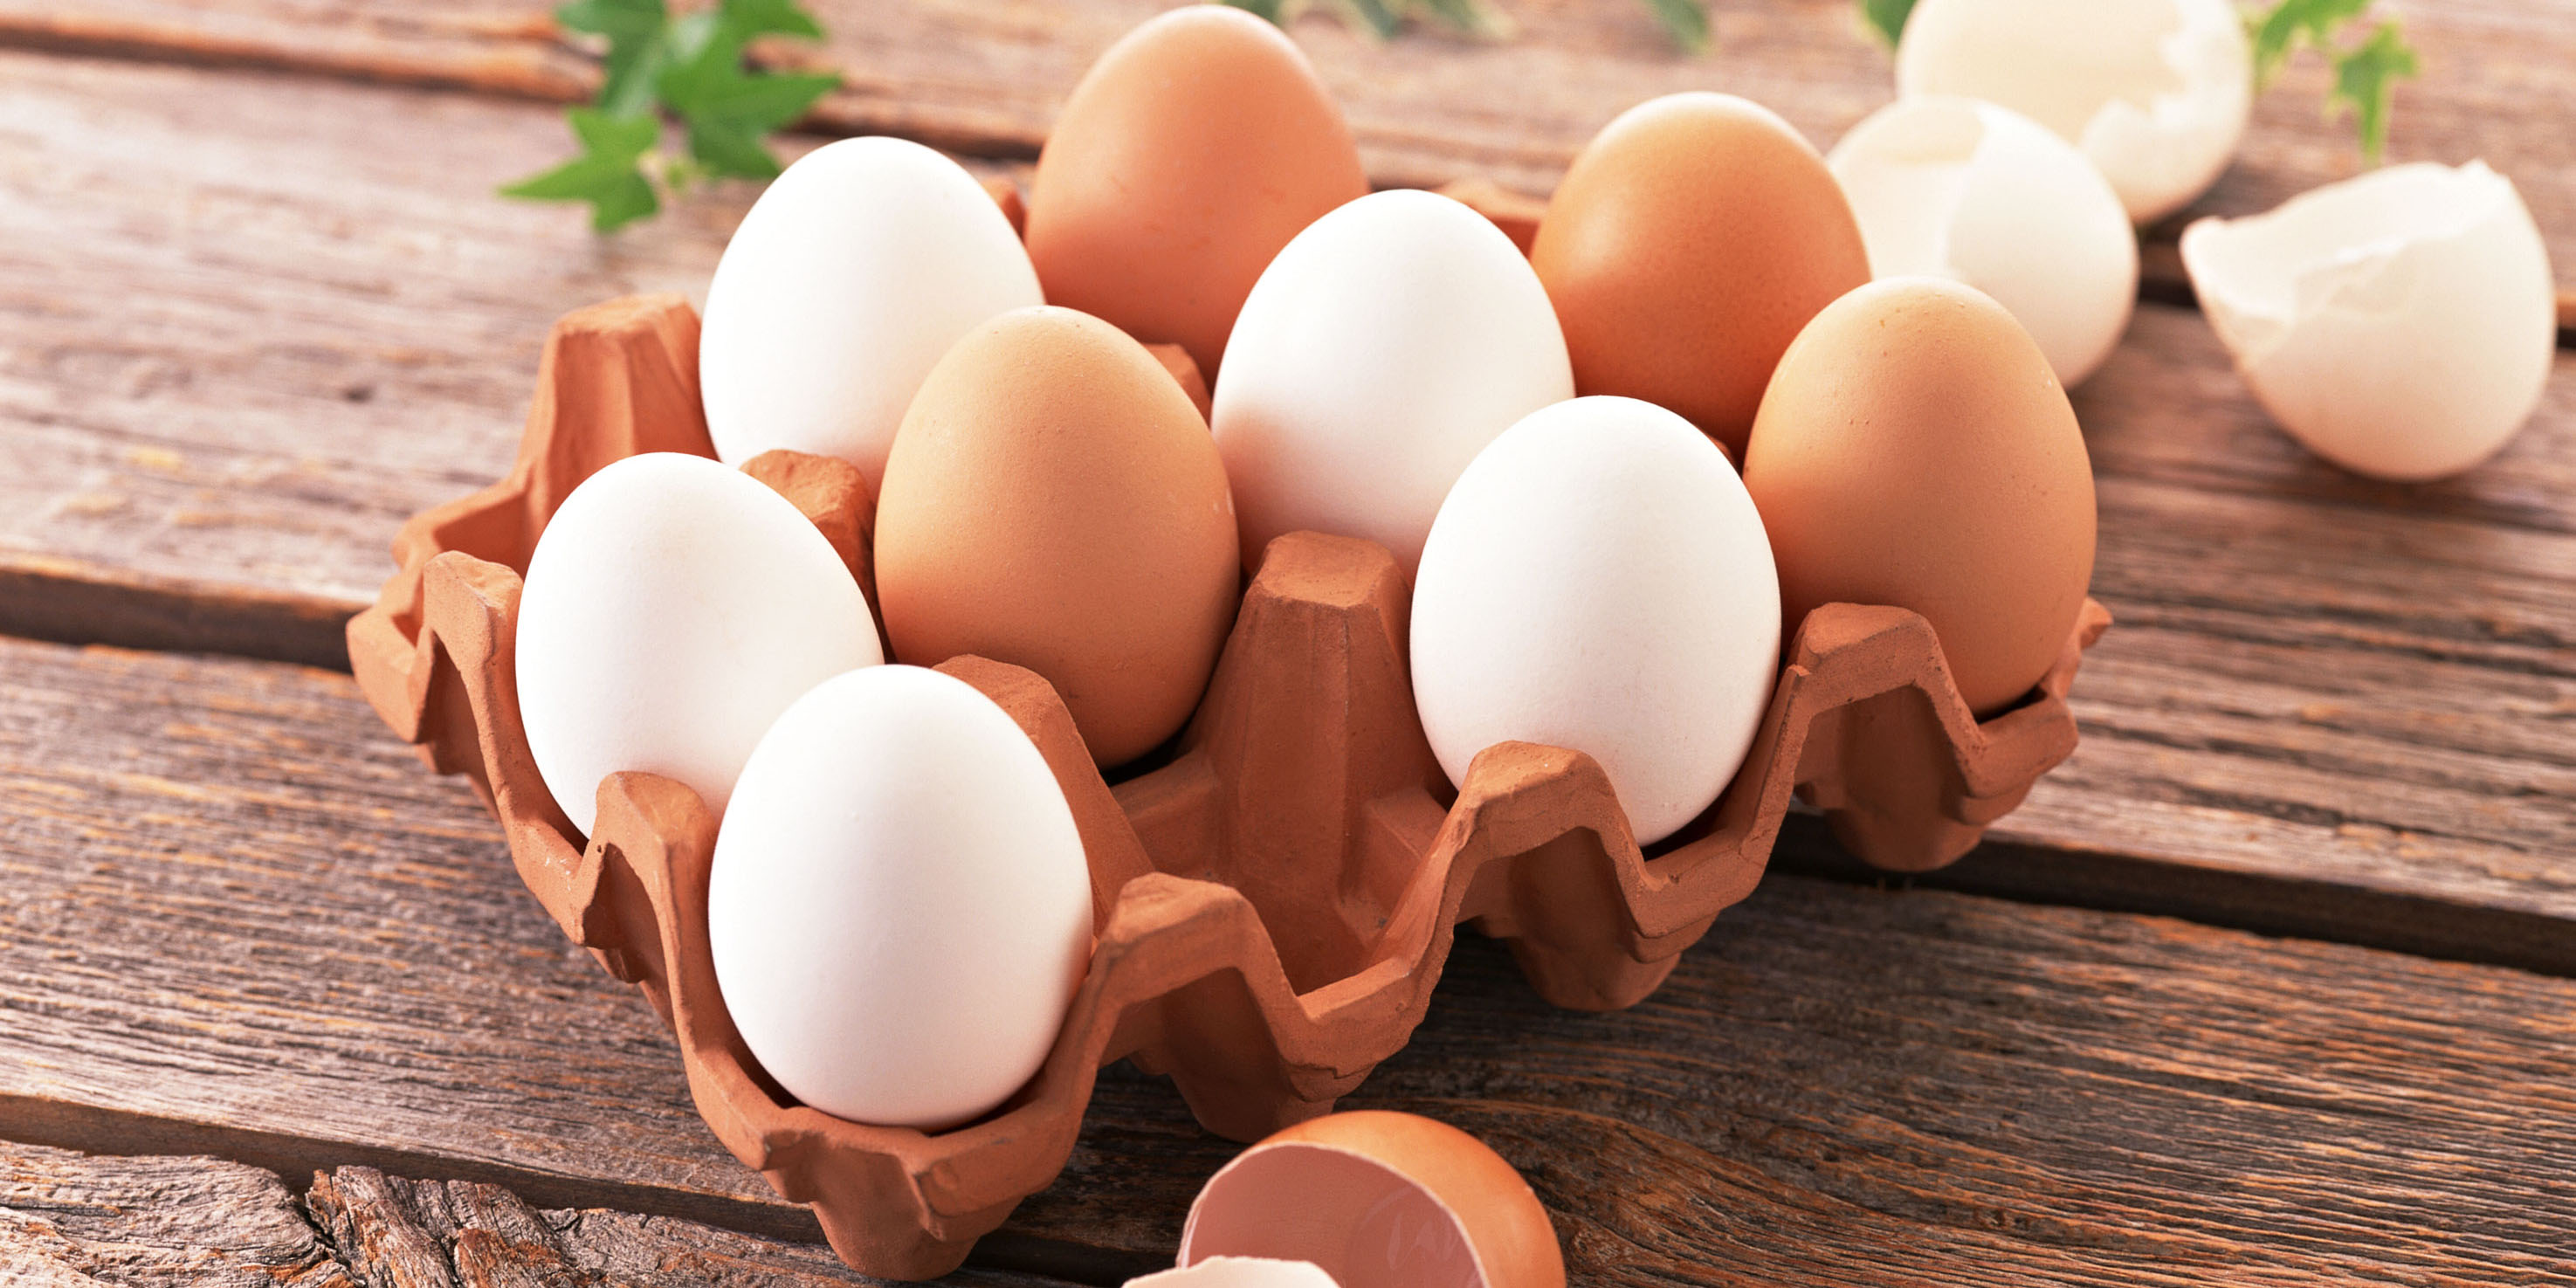 نرخ تخم مرغ در میادین میوه و تره بار